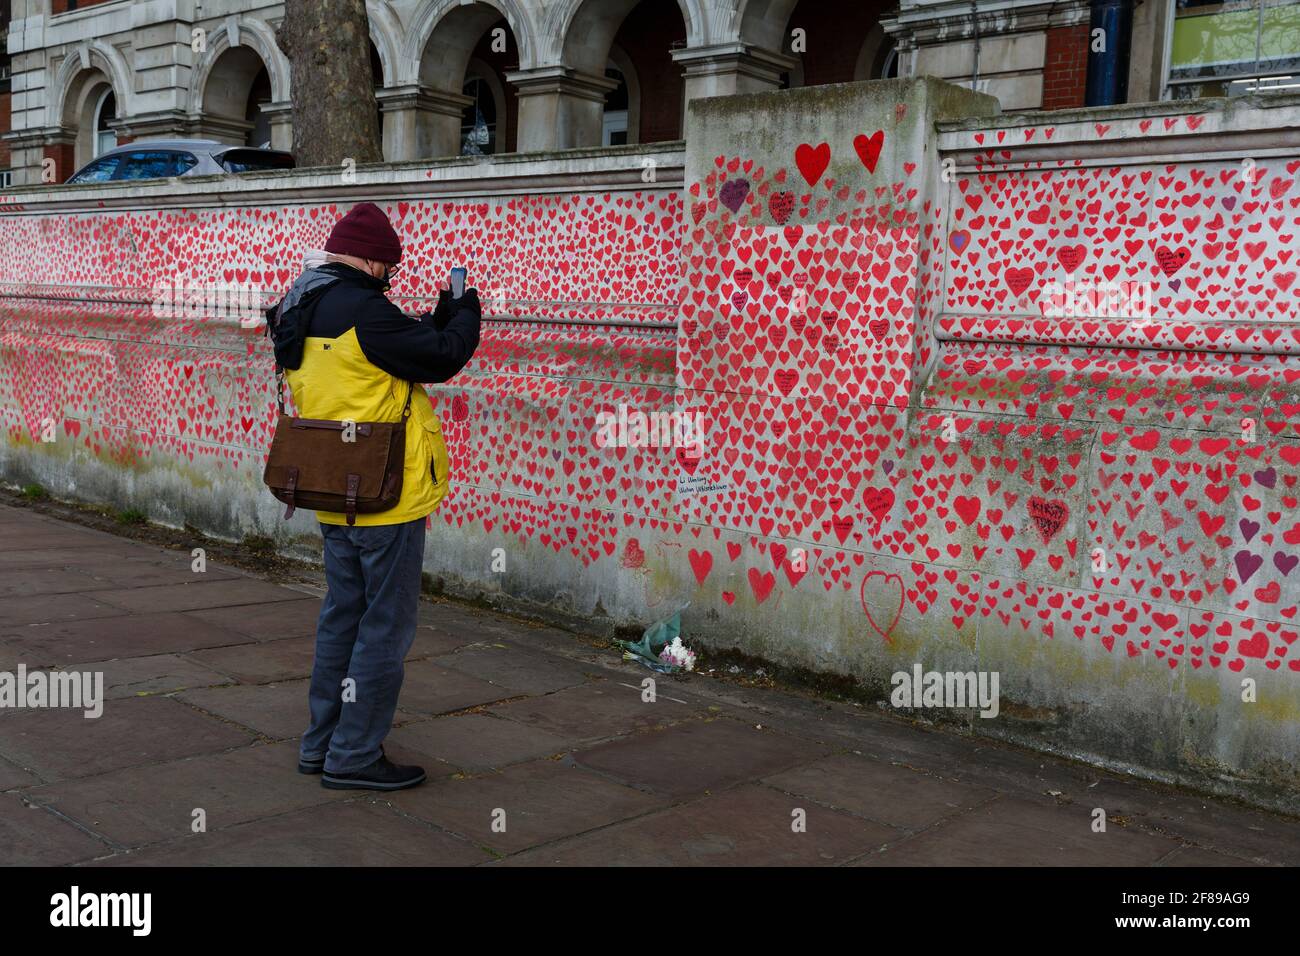 Los transeúntes observan los corazones rojos pintados en el Nacional Covid Memorial Wall como homenaje a las víctimas británicas De Corornavirus Foto de stock